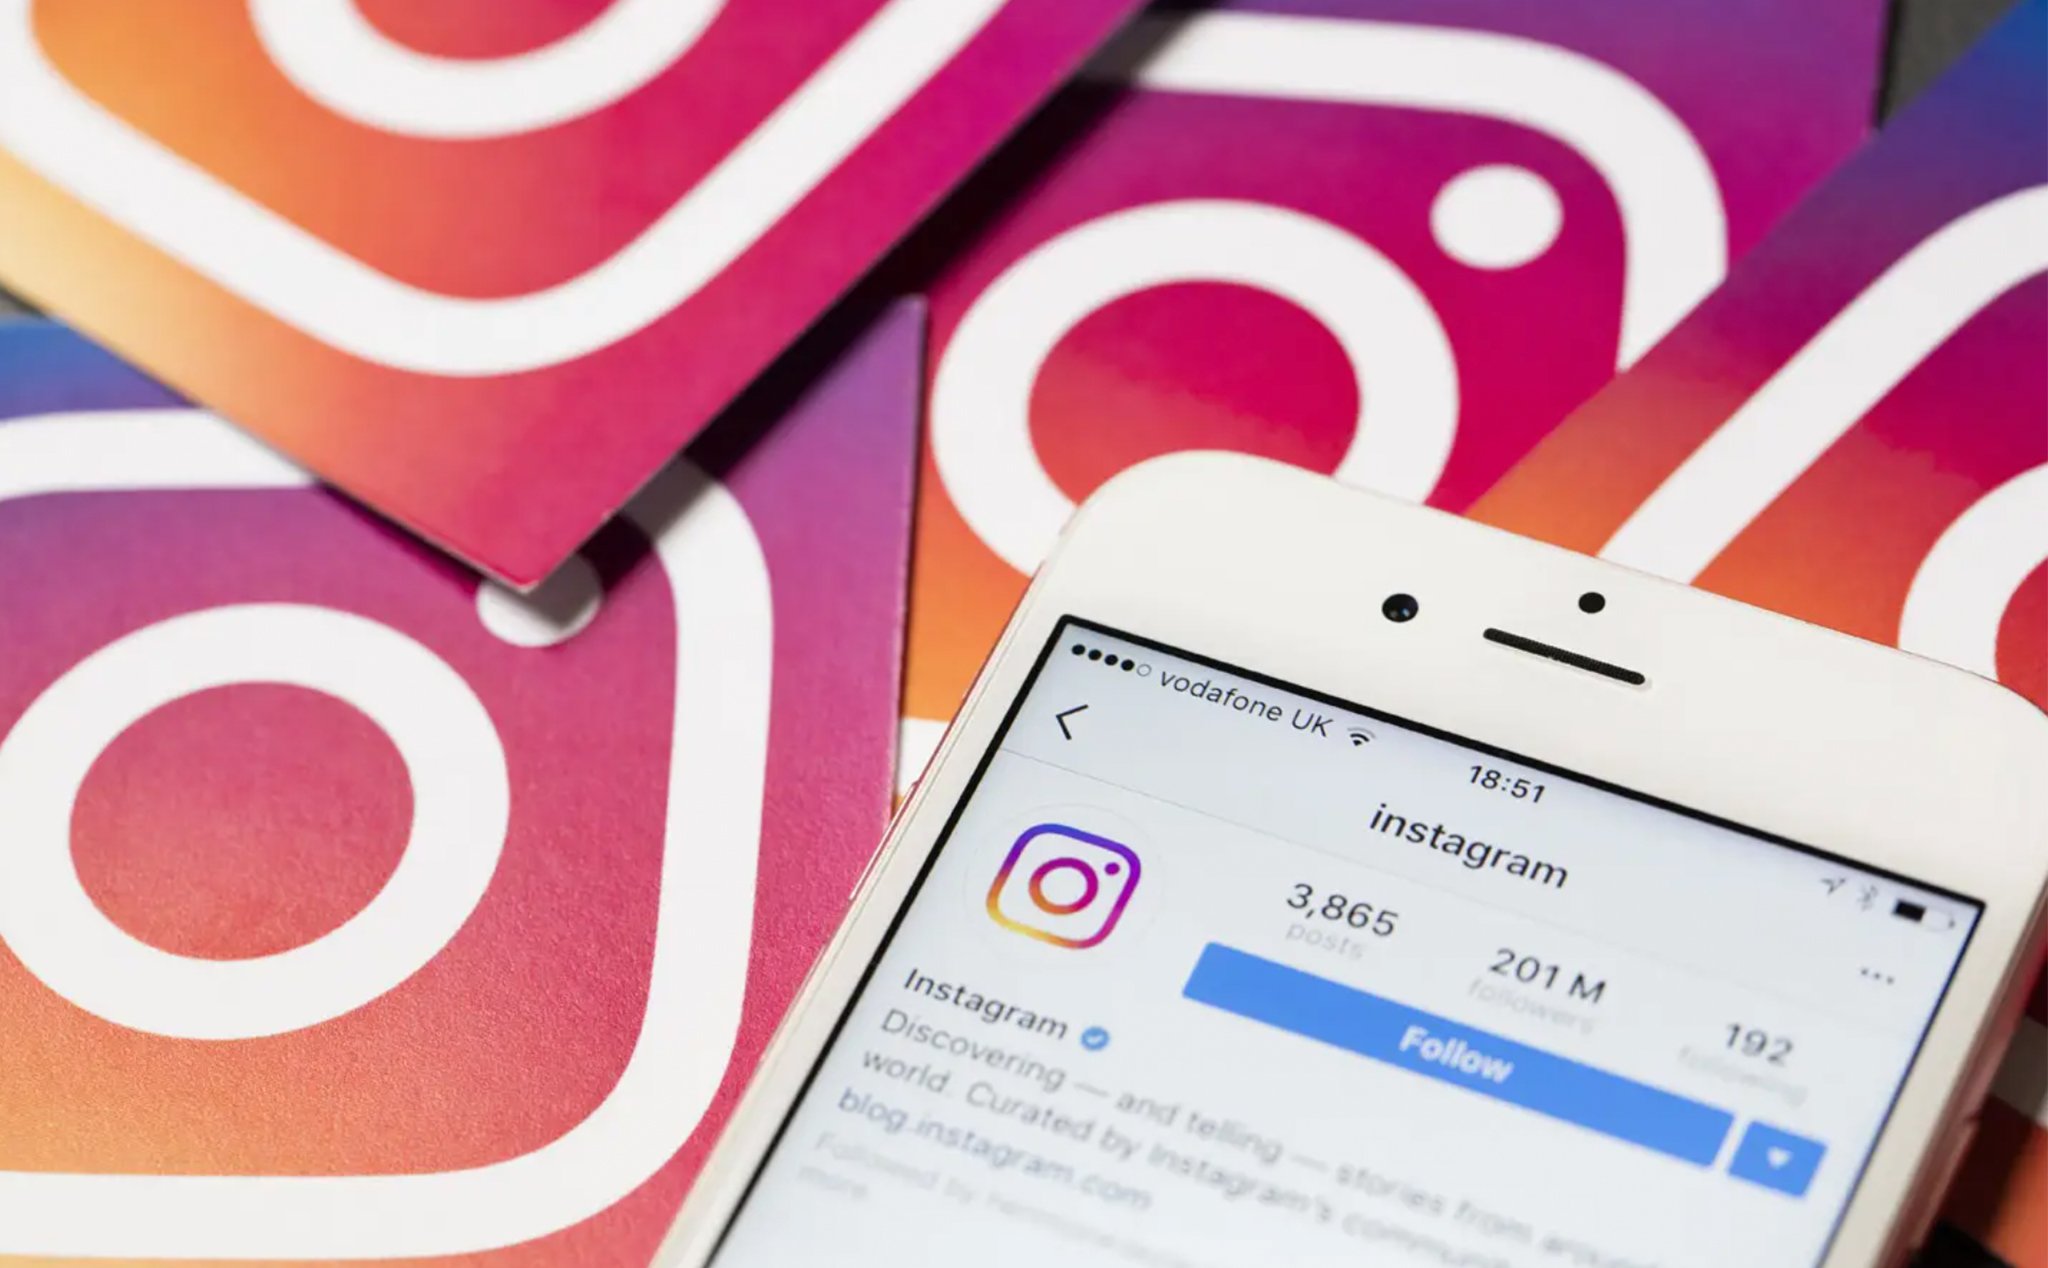 Instagram ứng dụng AI để ngăn chặn bình luận xúc phạm người khác